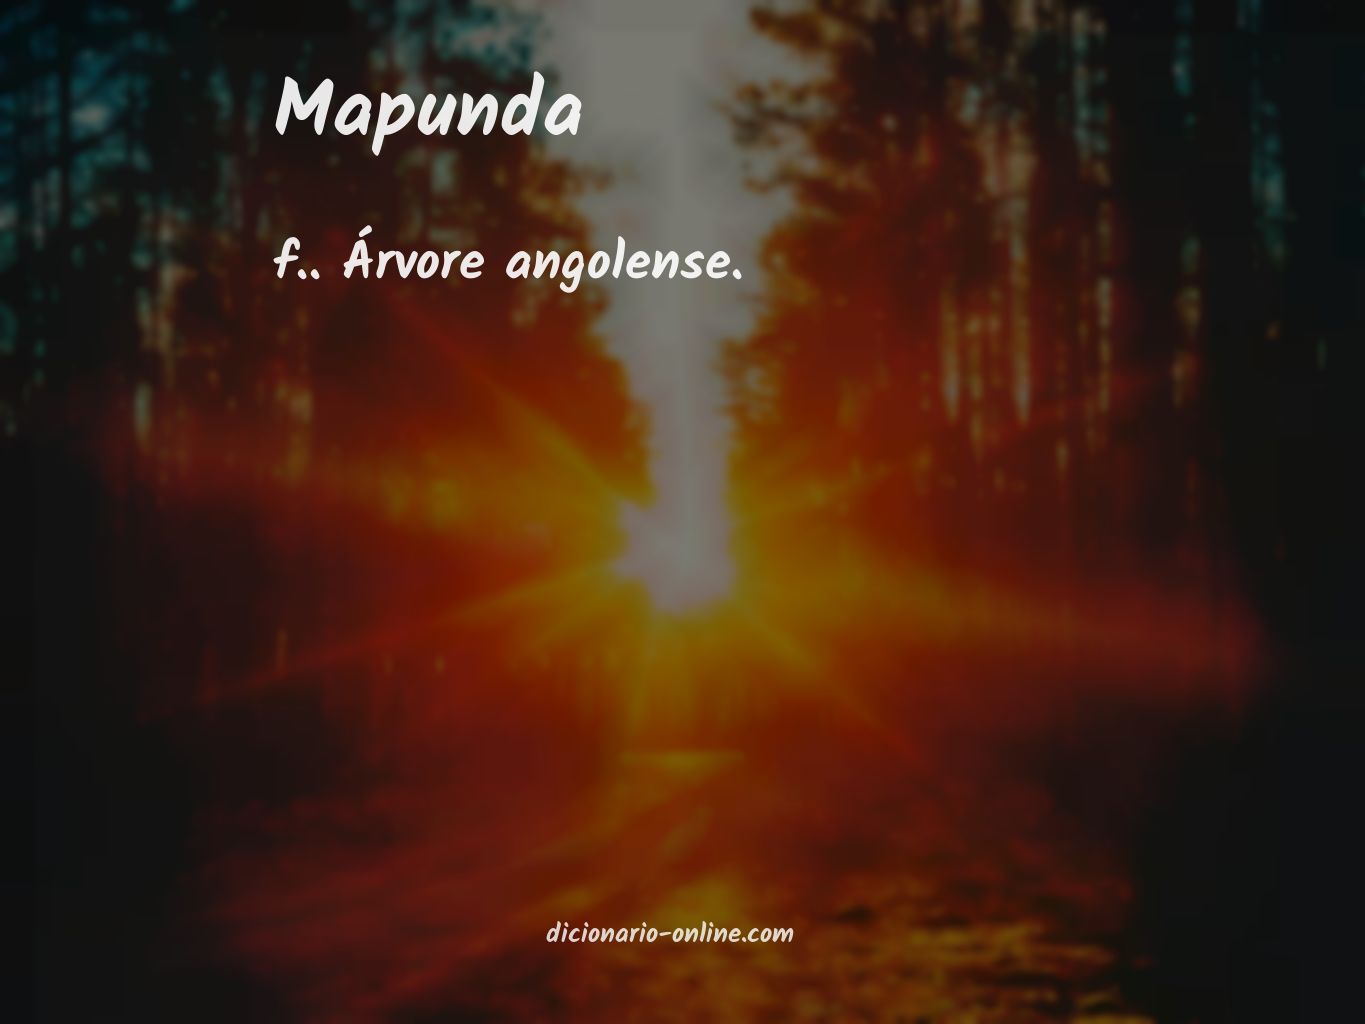 Significado de mapunda